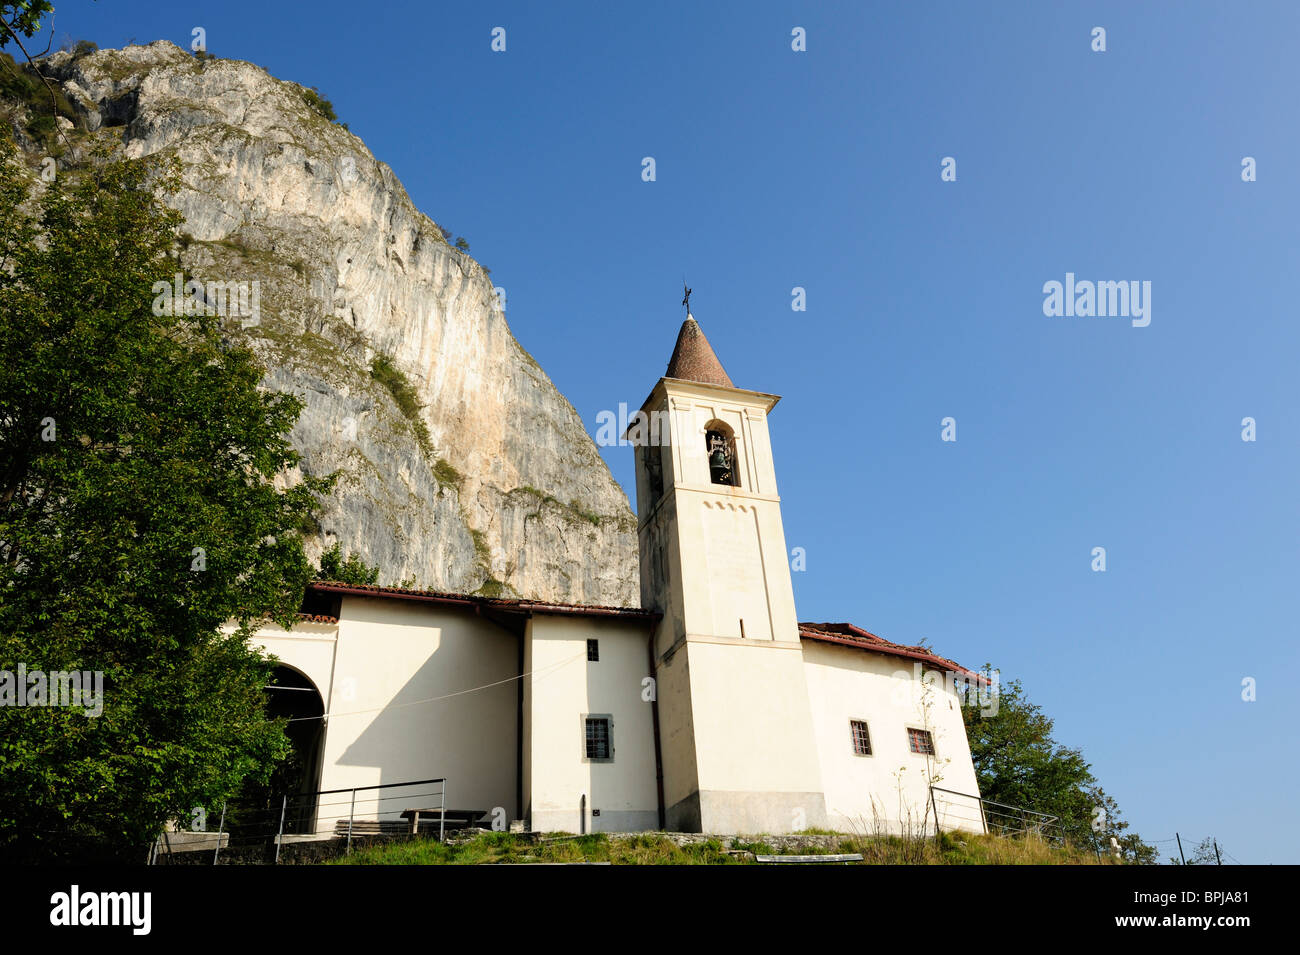 Iglesia de San Martino, en frente de la cara de la roca, San Martino, el Lago de Como, en Lombardía, Italia Foto de stock